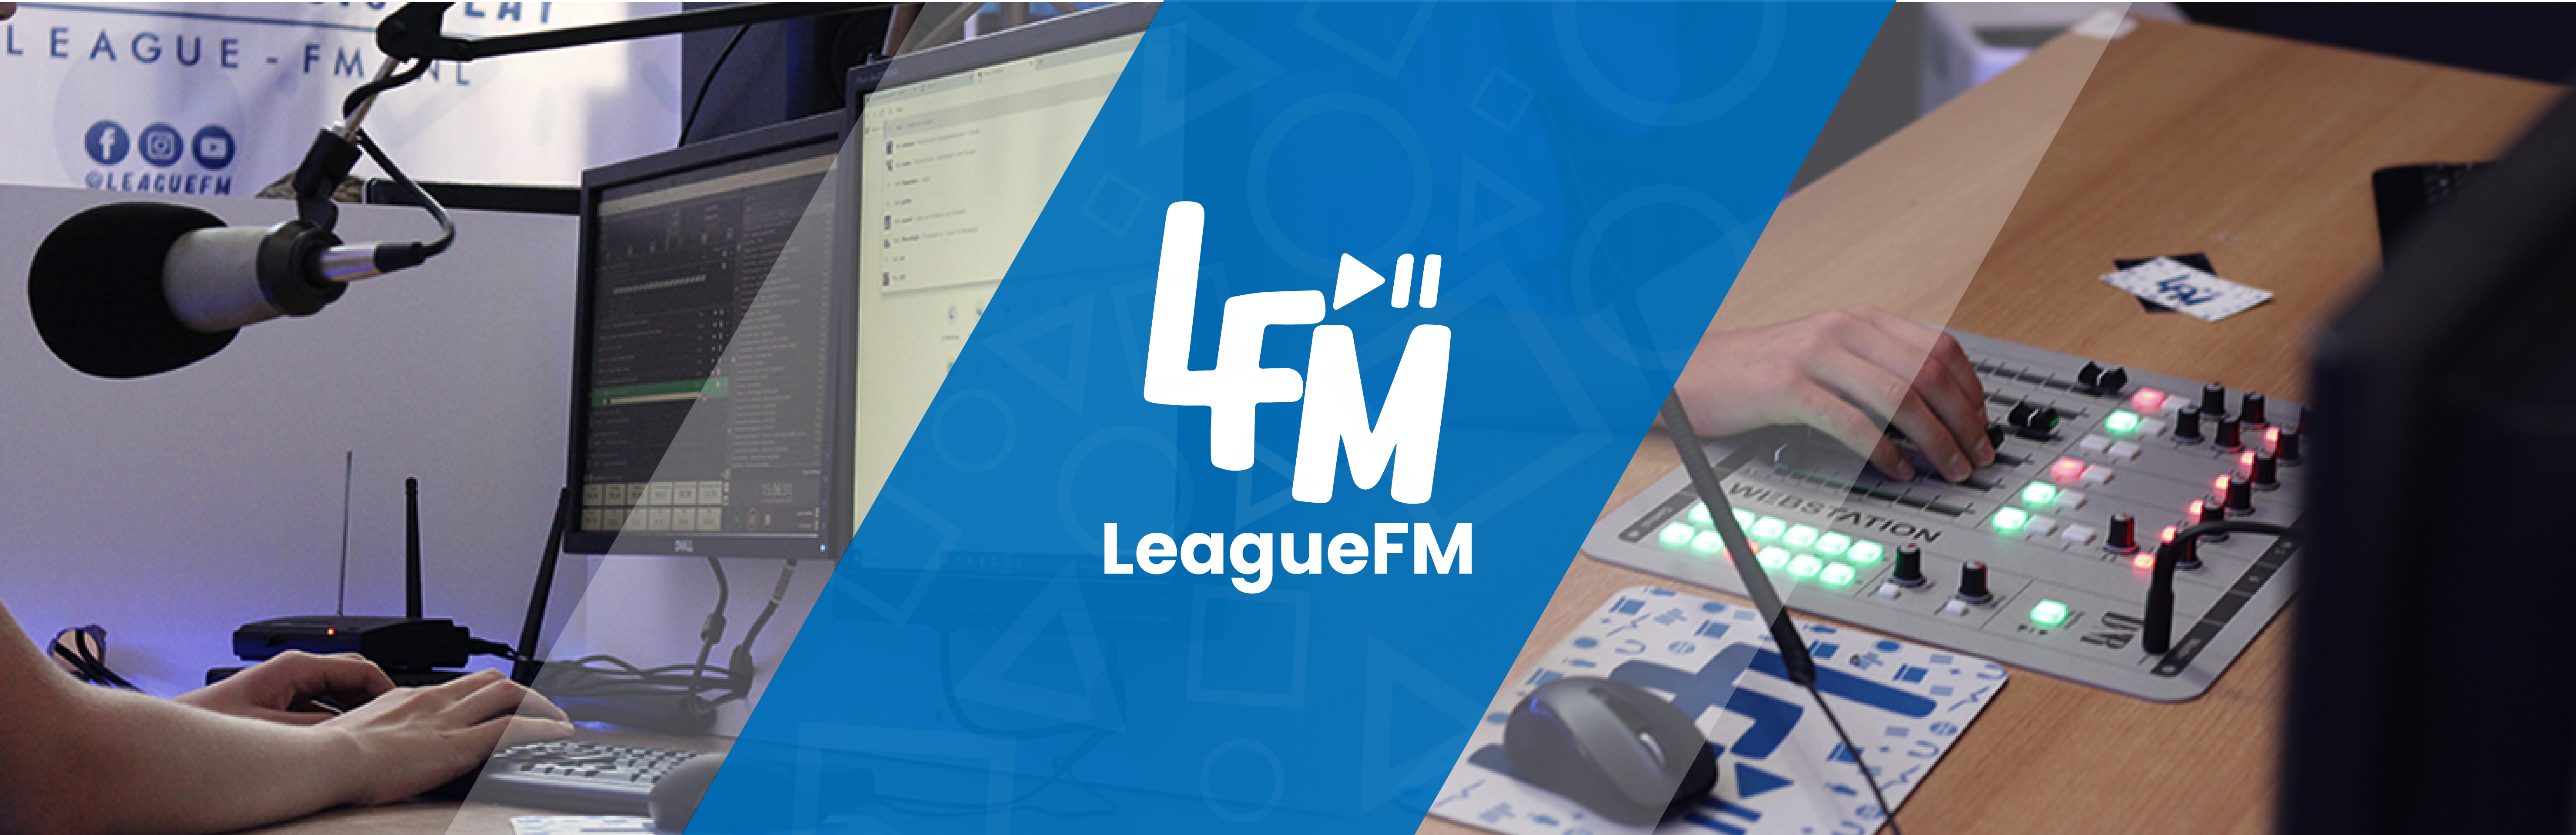 League-FM Banner